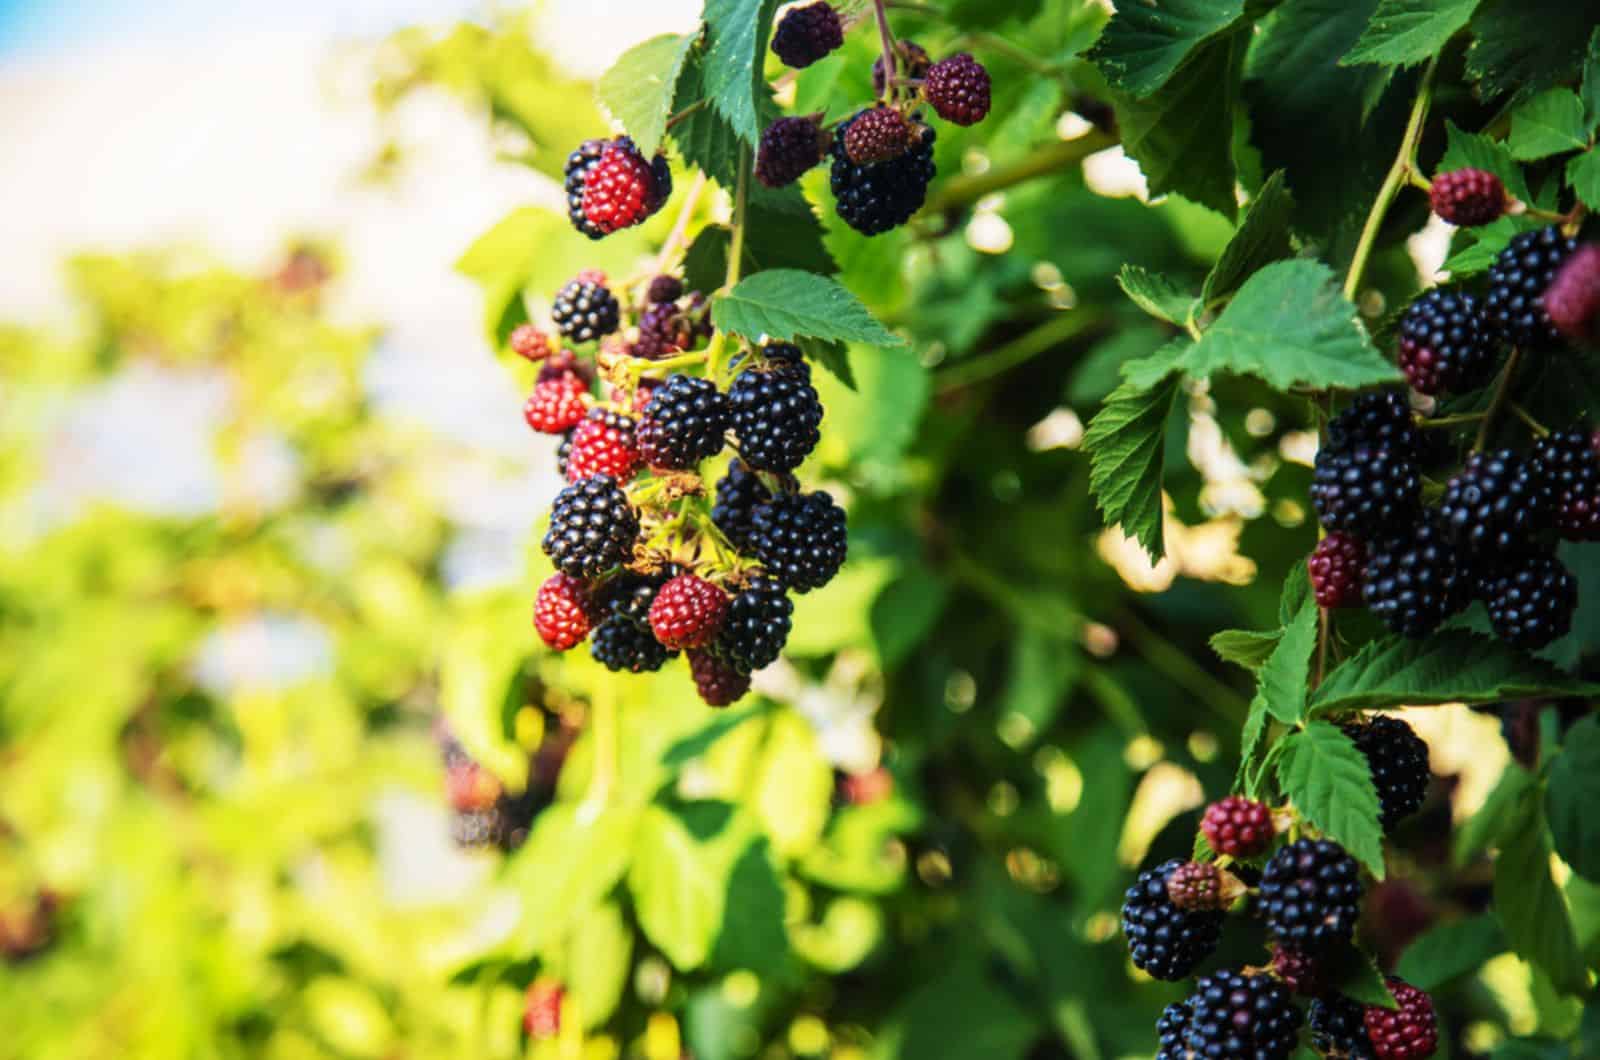 Blackberries grow in the garden